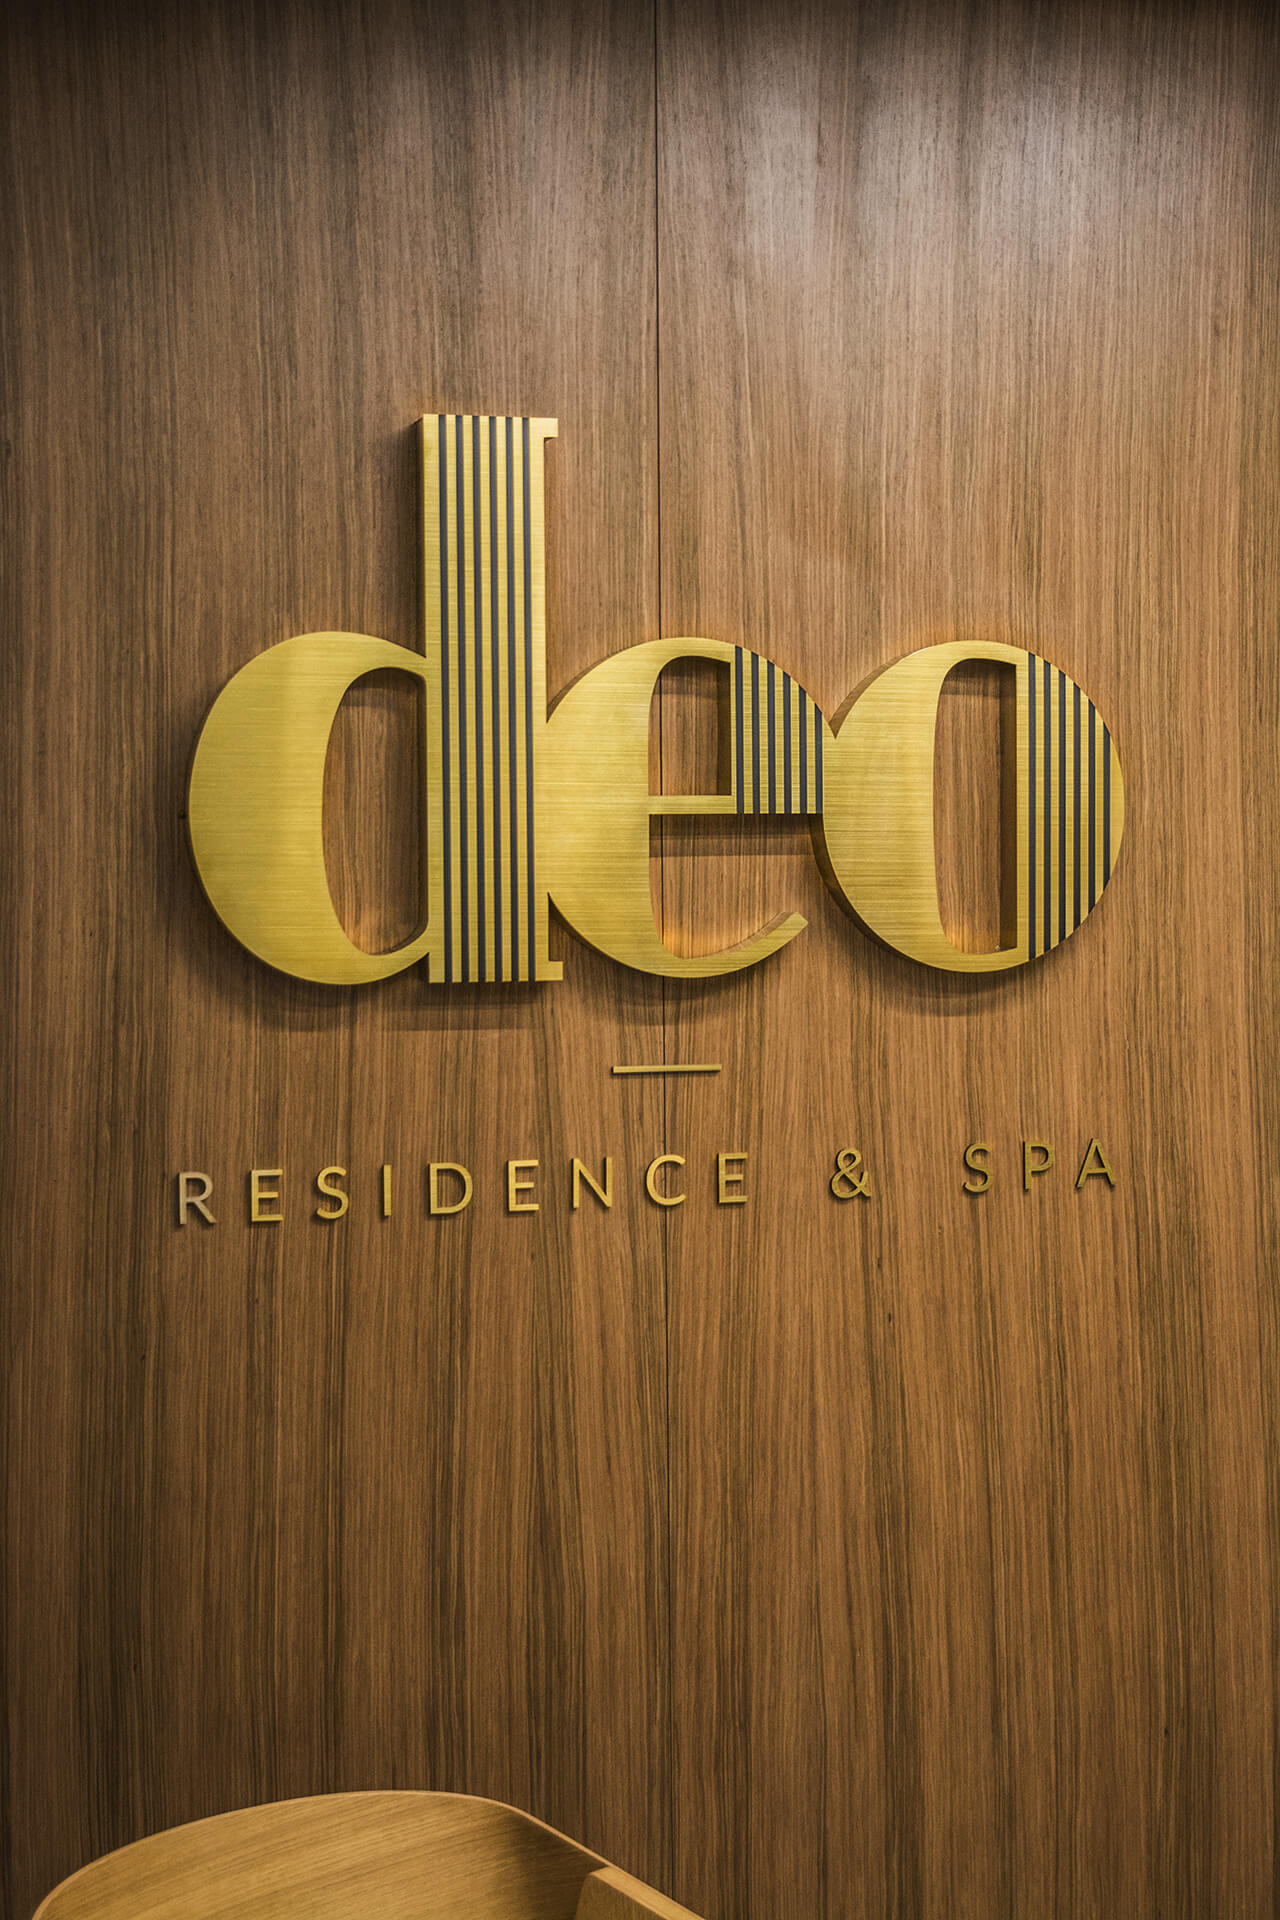 deo residence deo hotel spa - deo-résidence-lettre-de-sécurité-acier-brossé-lettre-au-dessus-de-l'entrée-au-bâtiment-bureau-hauteur-lettre-montée-sur-le-mur-lettre-sur-les-capitales-lettre-sur-le-bureau-logo-firmowe-gdansk